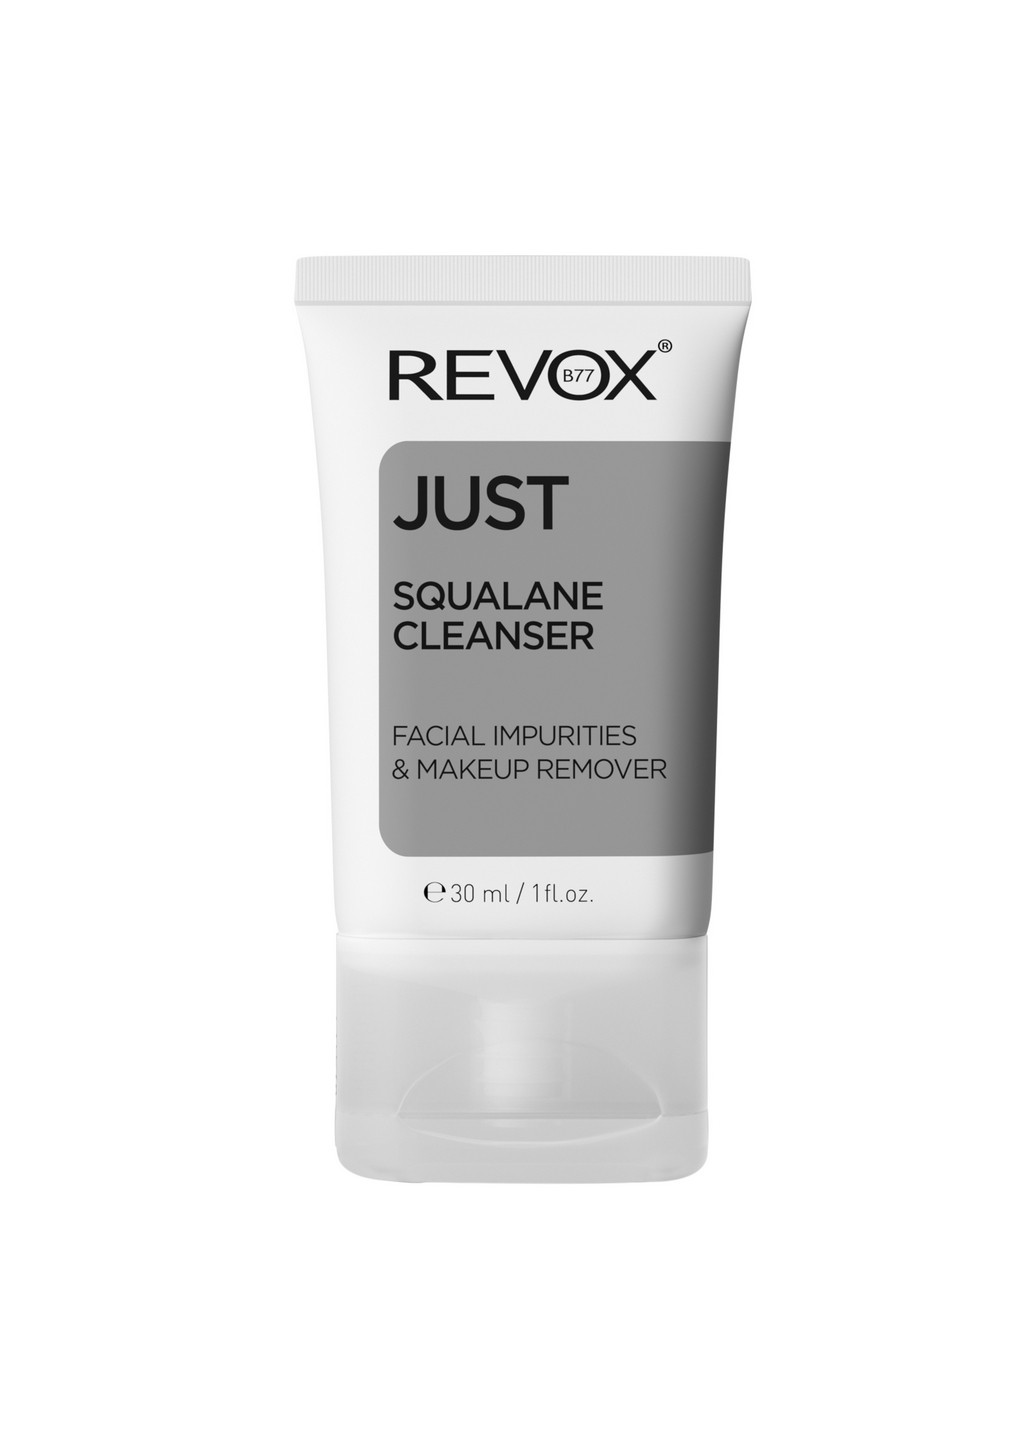 Увлажняющая эмульсия со скваланом для очищения и демакияжа B77 Just Squalane Cleanser - Facial & Makeup Remover, 30 мл Revox (264921011)